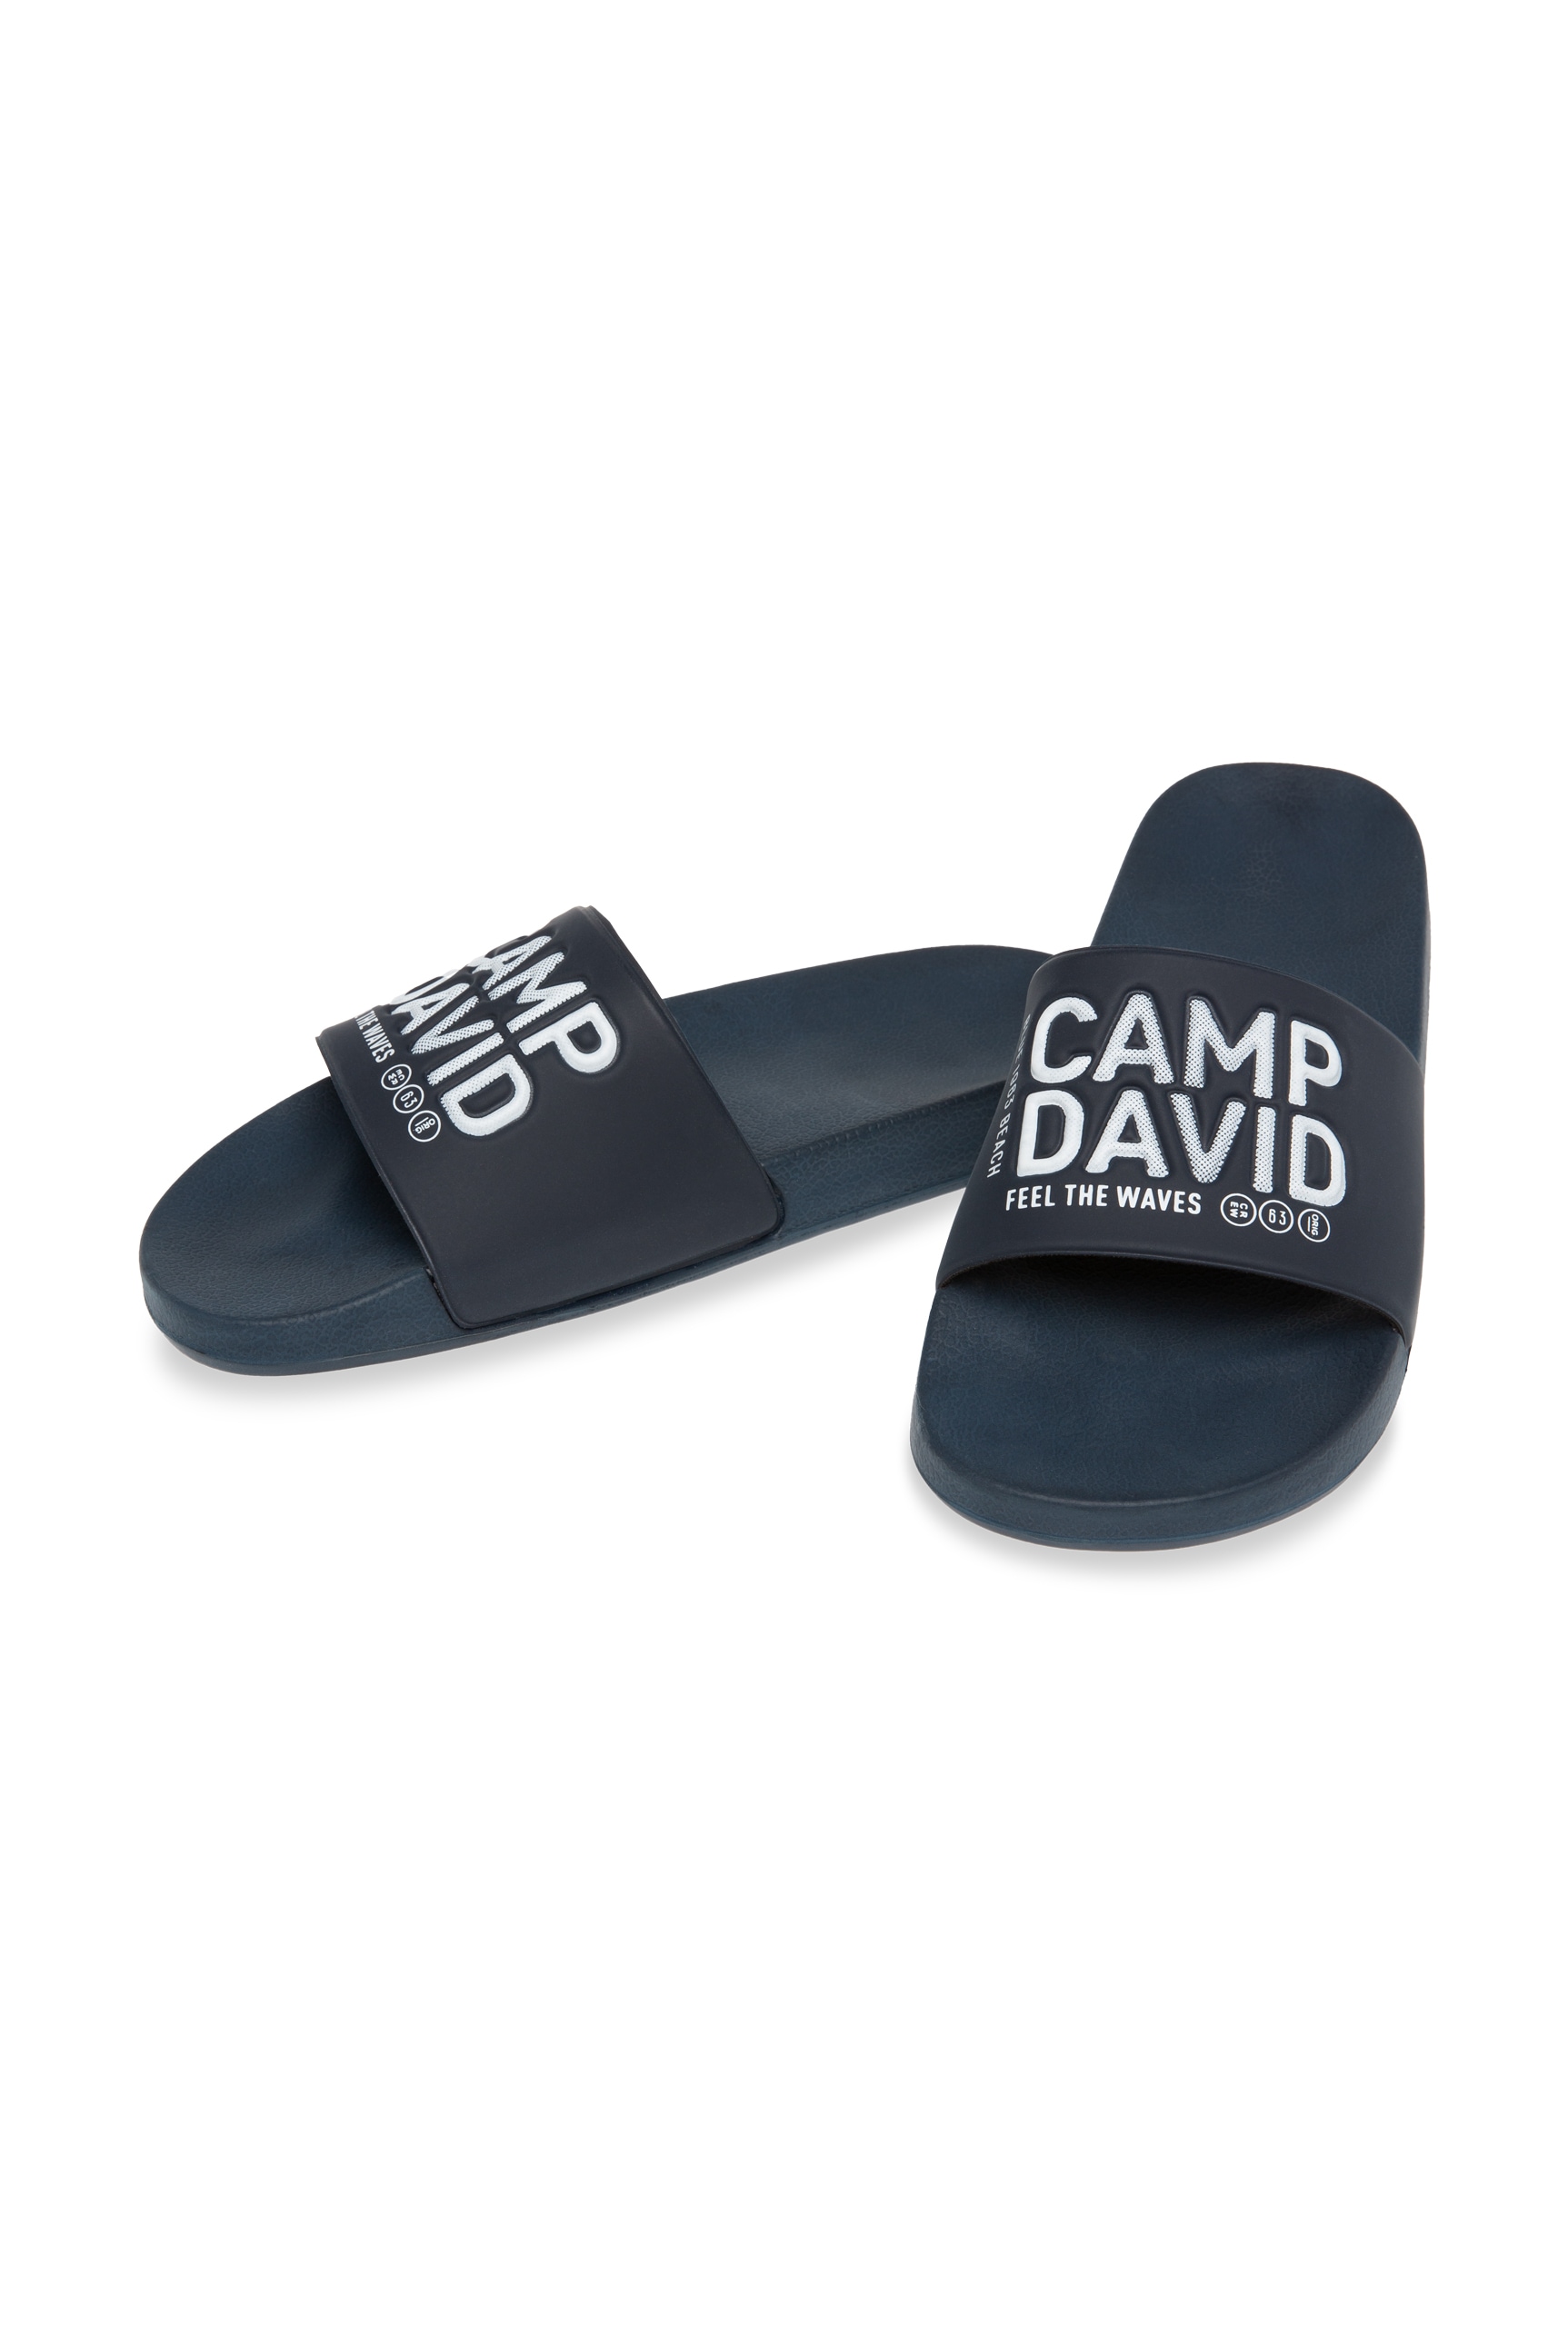 CAMP DAVID Pantolette, für Nassräume geeignet